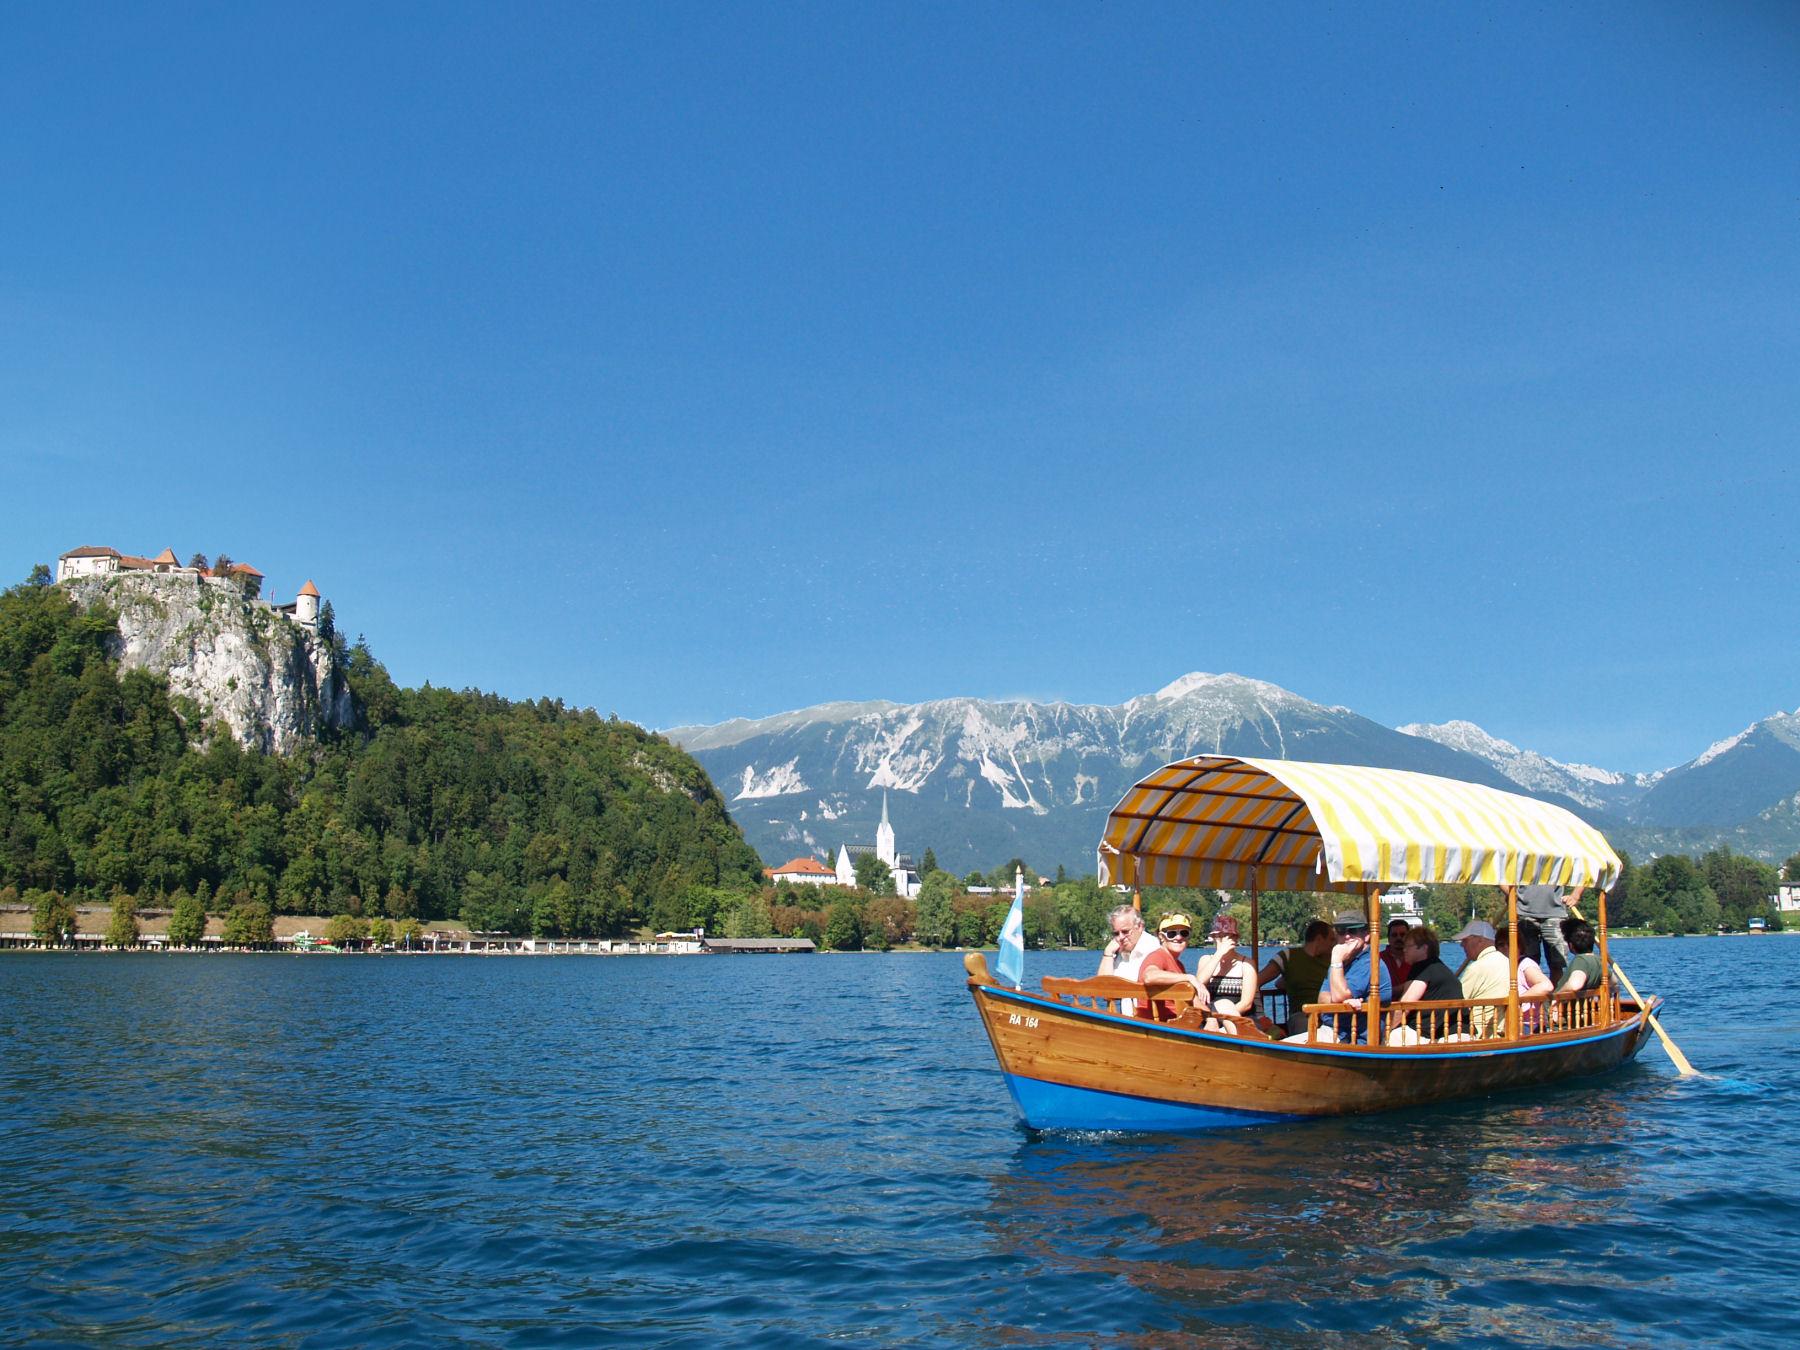 スロベニア旅行で訪れたいブレッド湖と周辺エリア観光名所！眼下に広がる絵画のような絶景